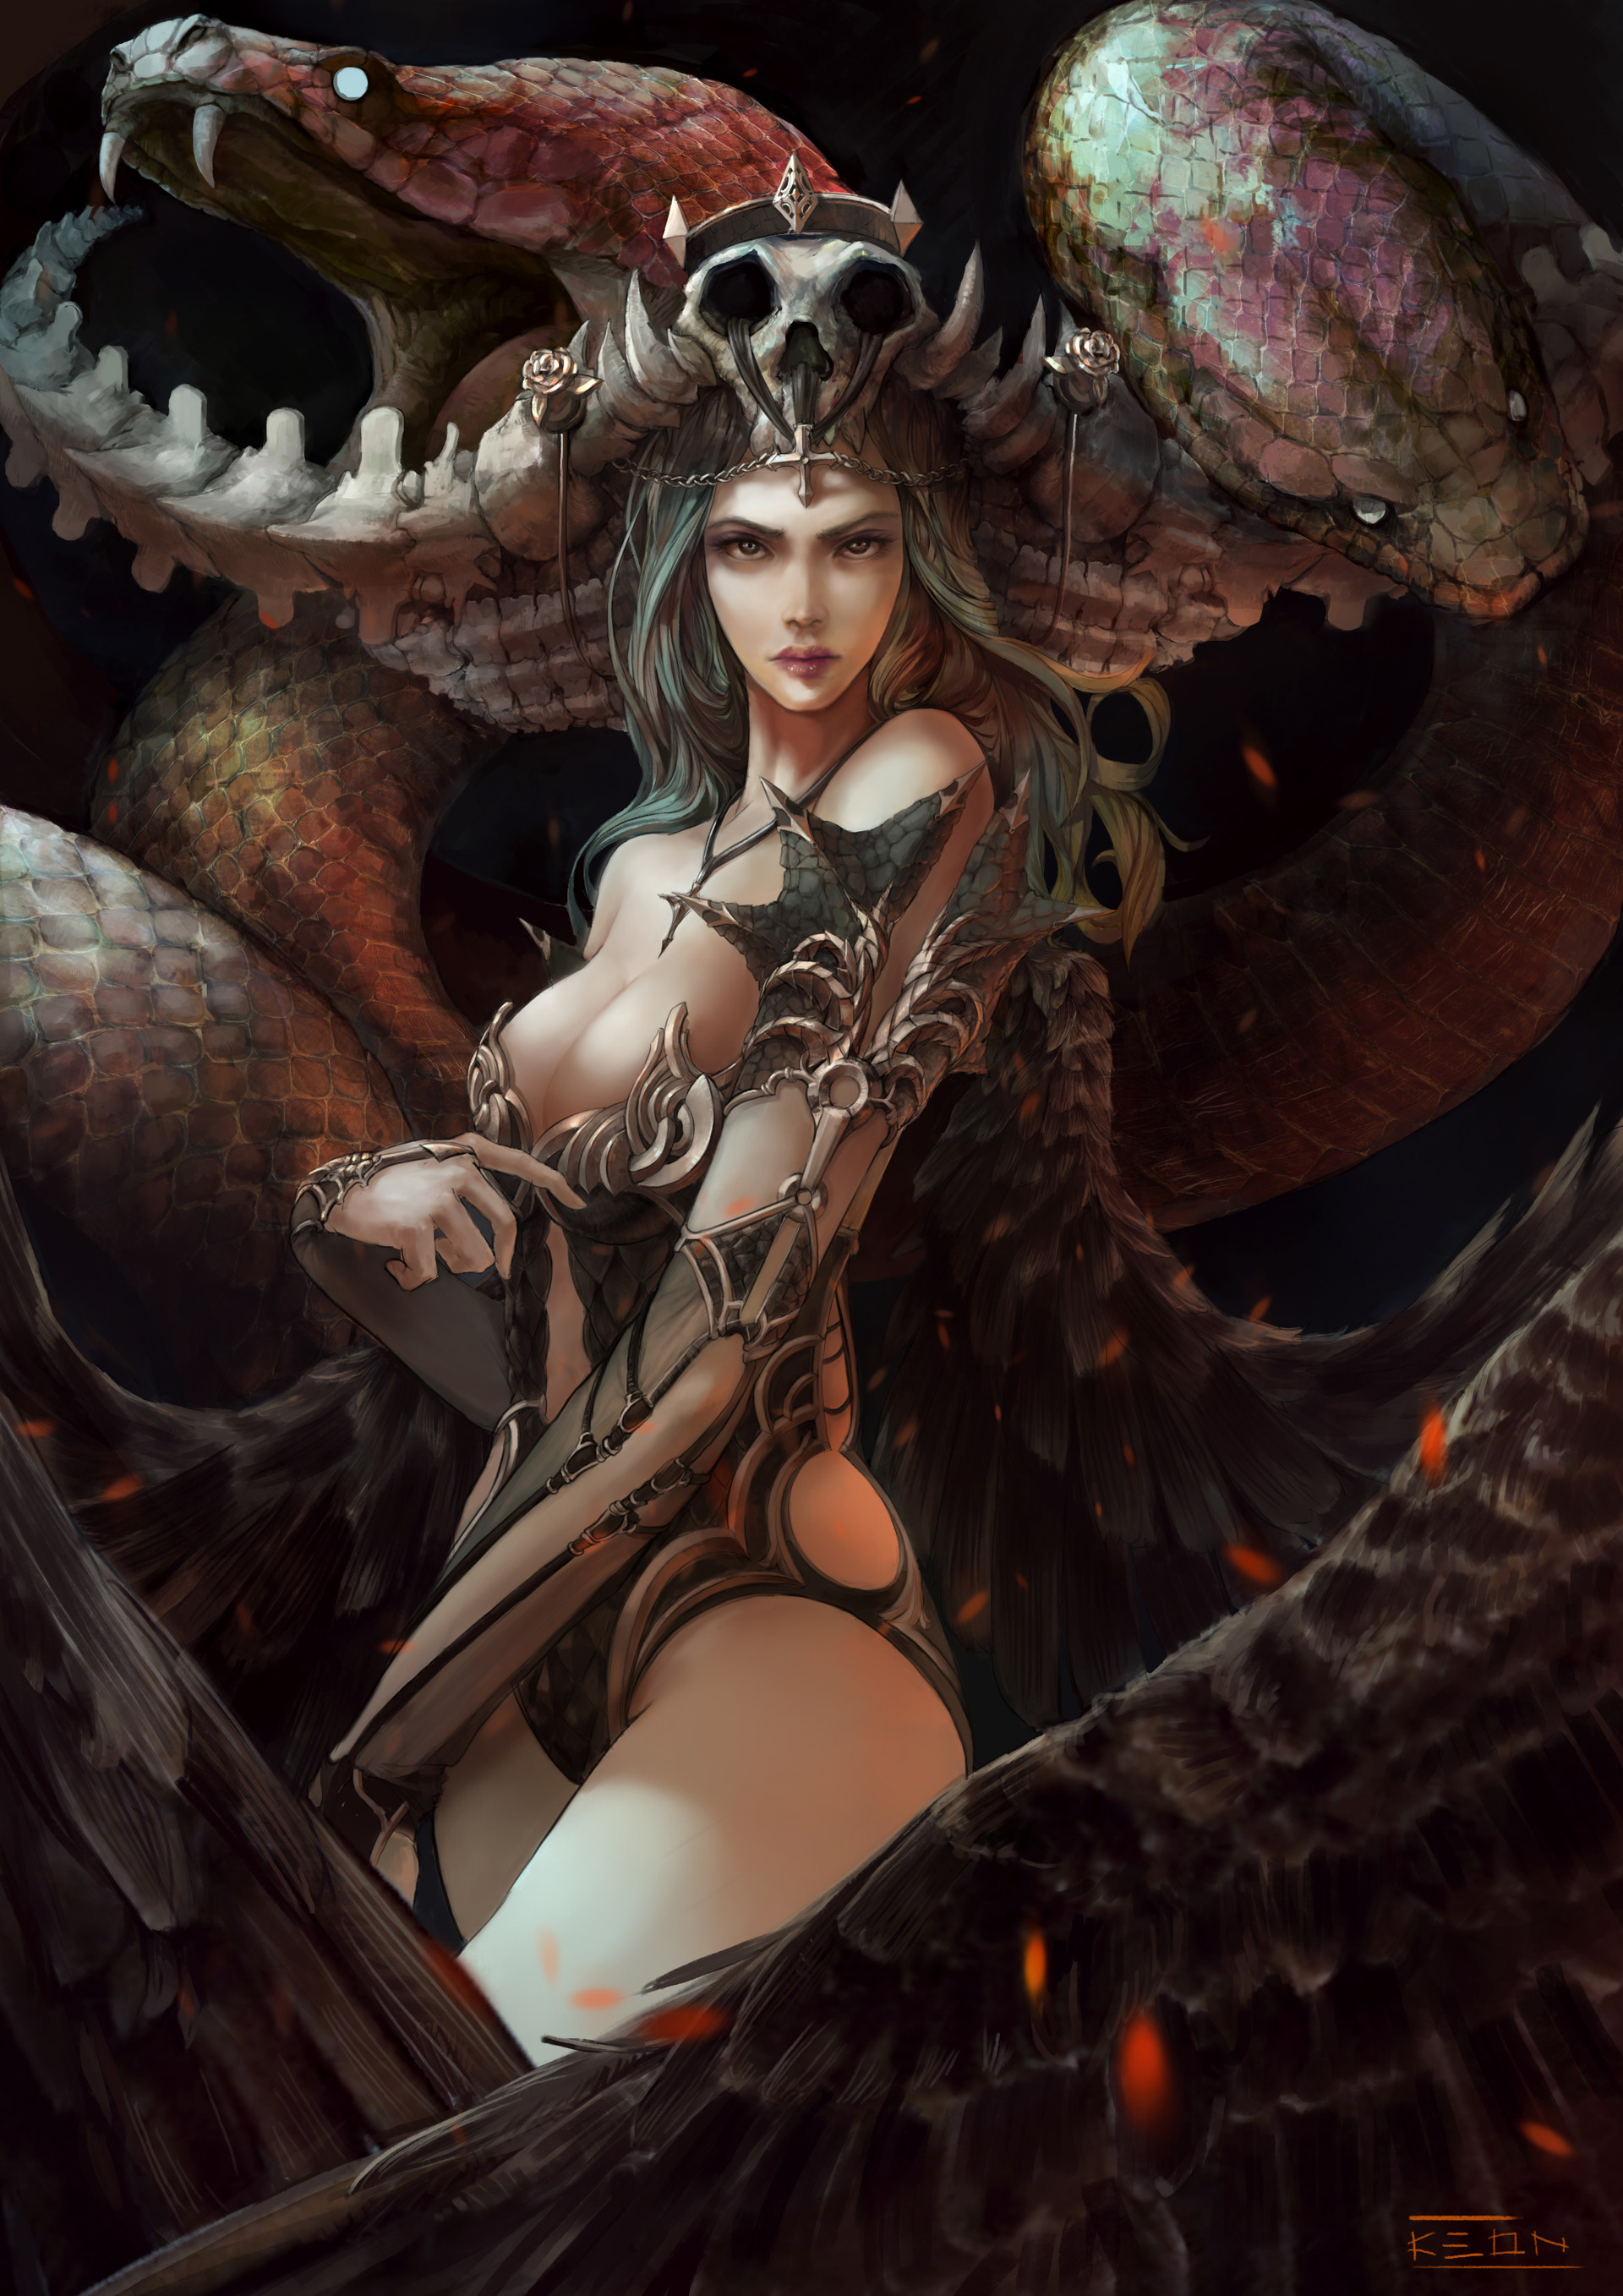 General 1920x2716 women artwork digital art fantasy girl fantasy art cleavage armor wings crown illustration bikini armor